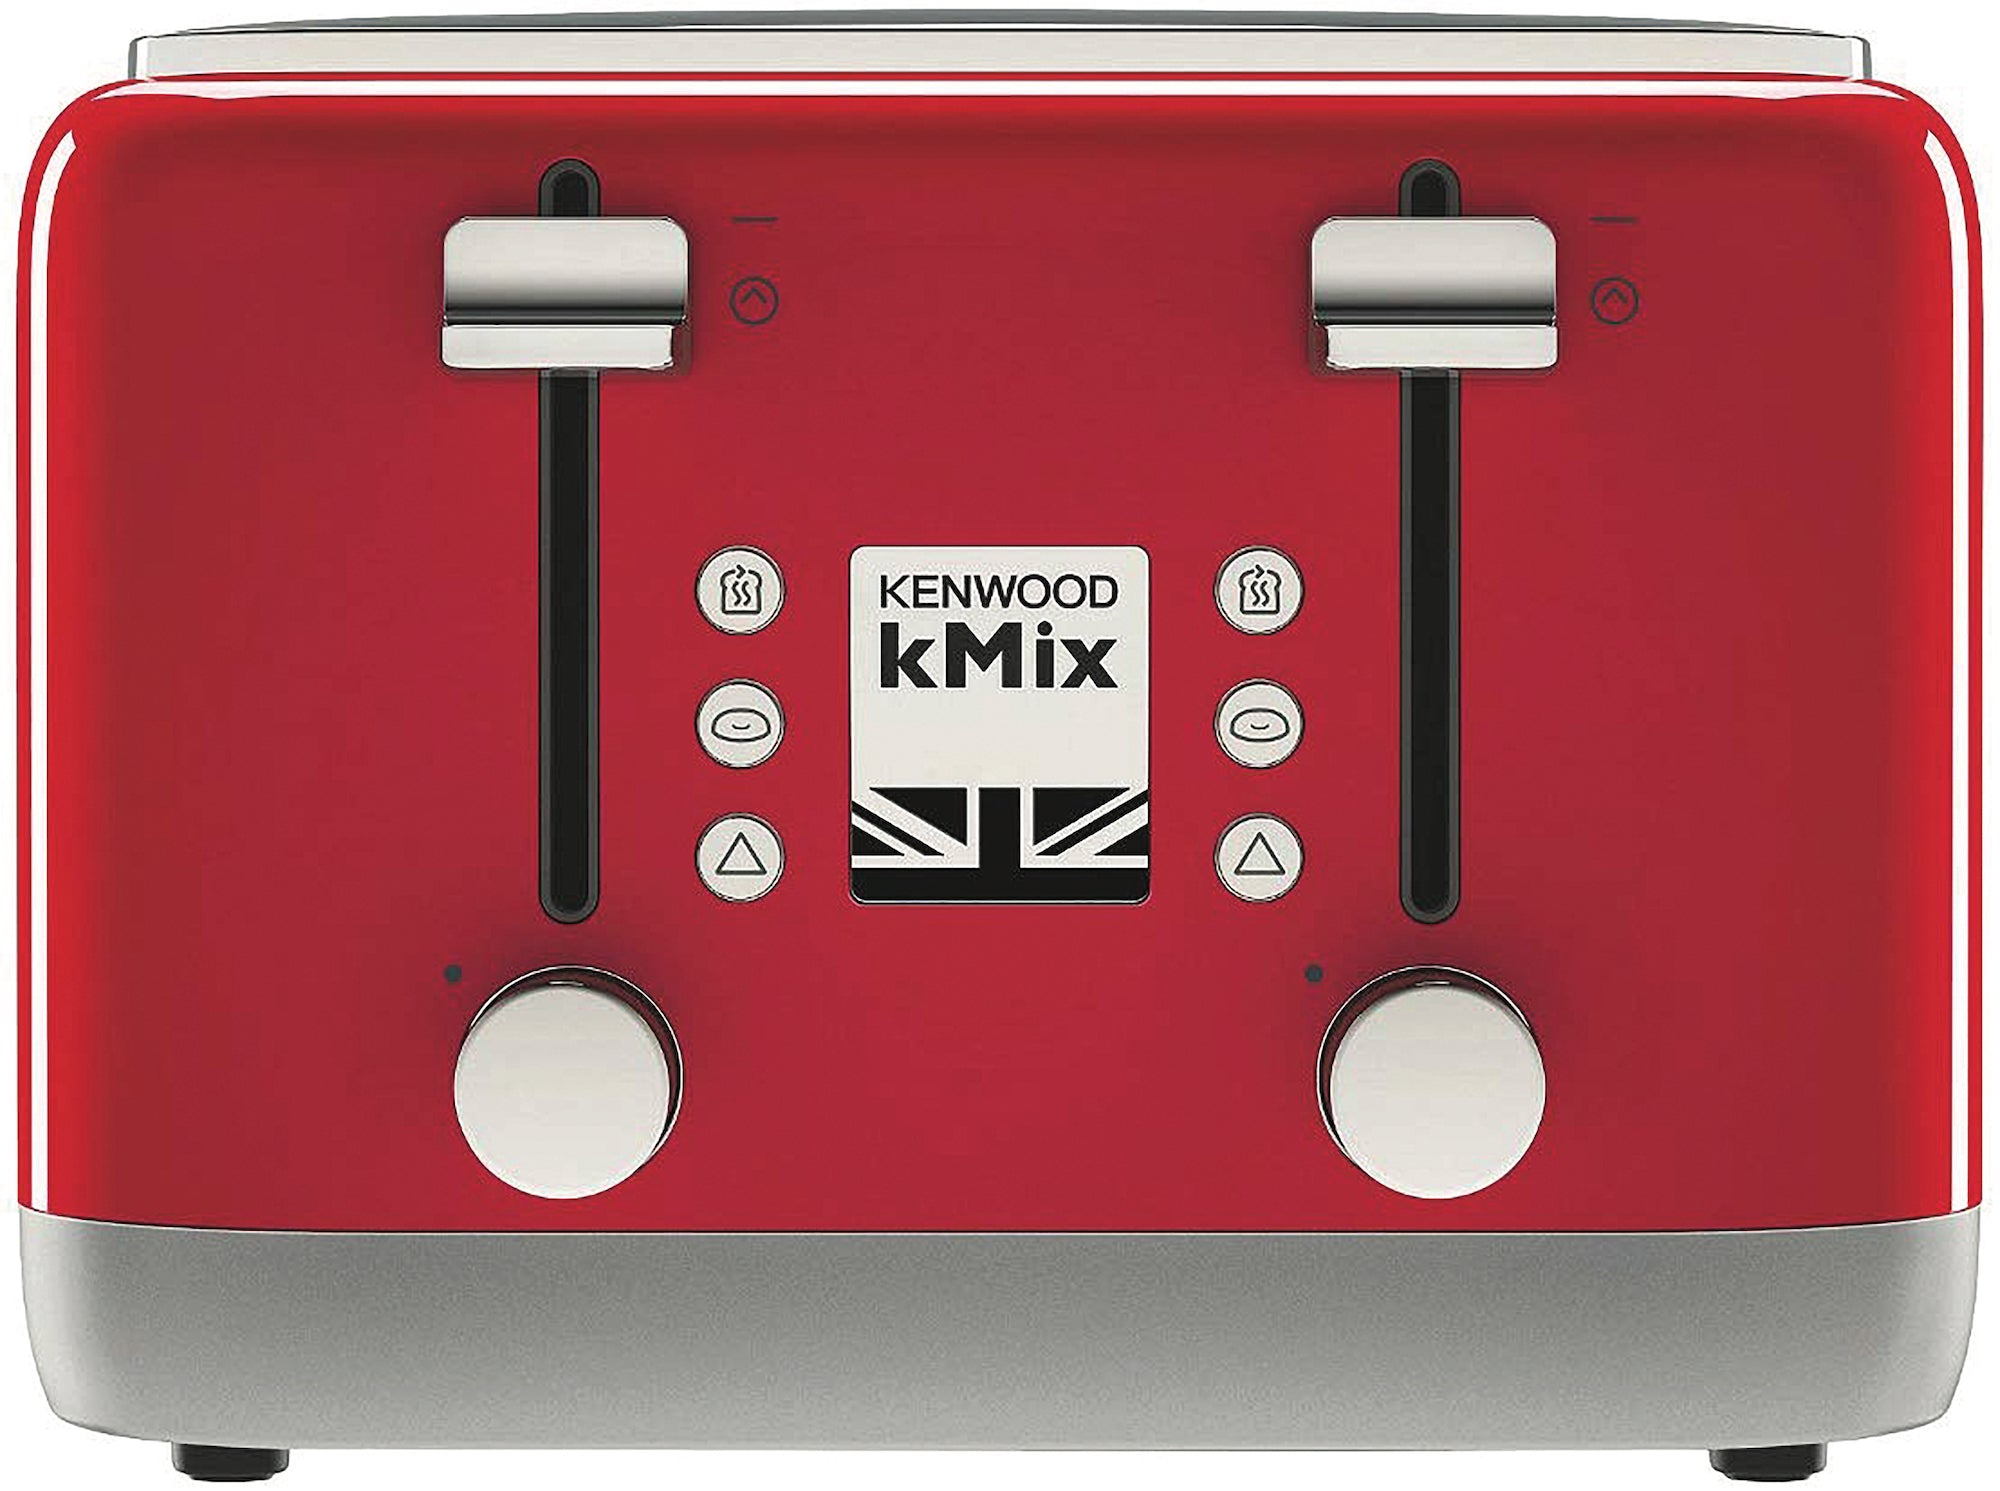 Kenwood KMix 4-slot Toaster